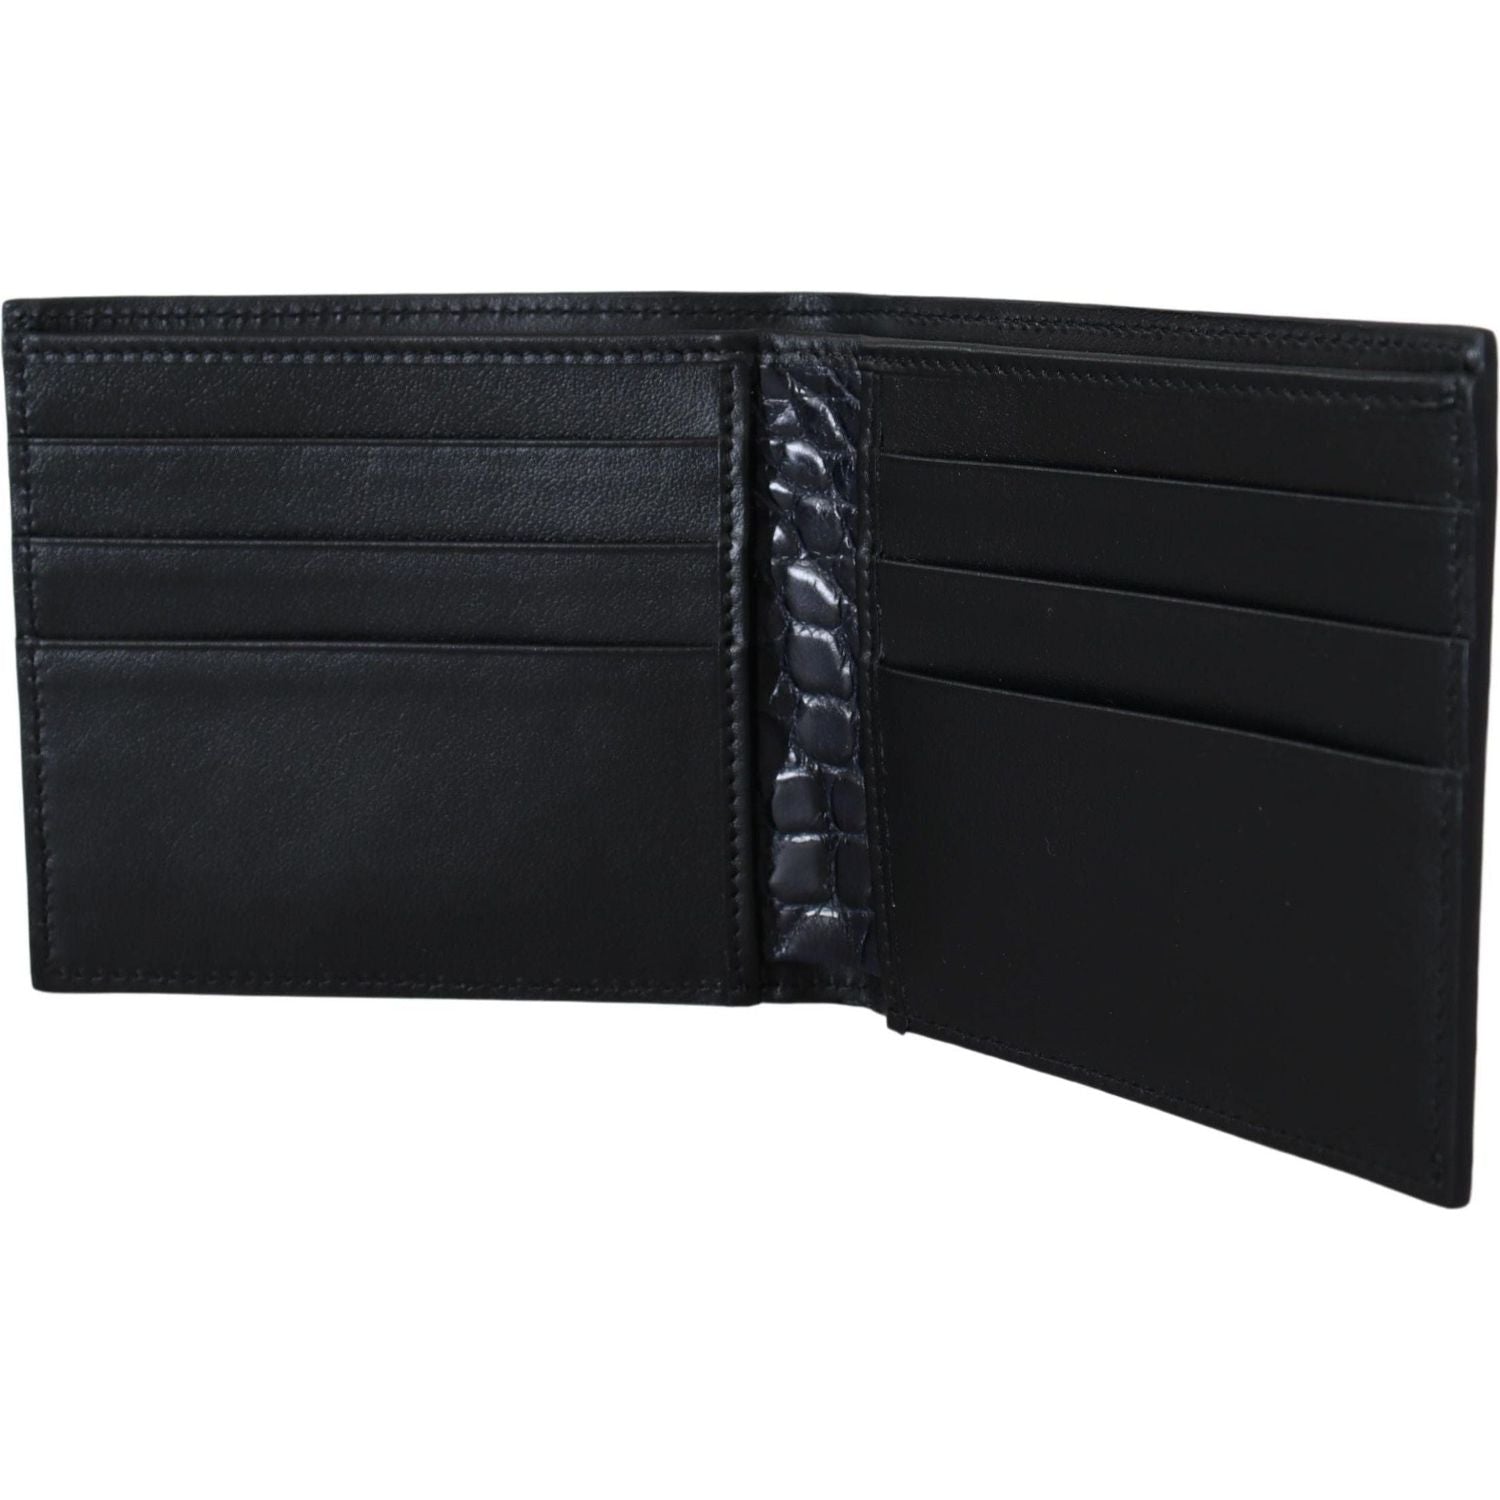 Dolce & Gabbana | Black Bifold Card Holder Men Exotic Leather Wallet | 1259.00 - McRichard Designer Brands